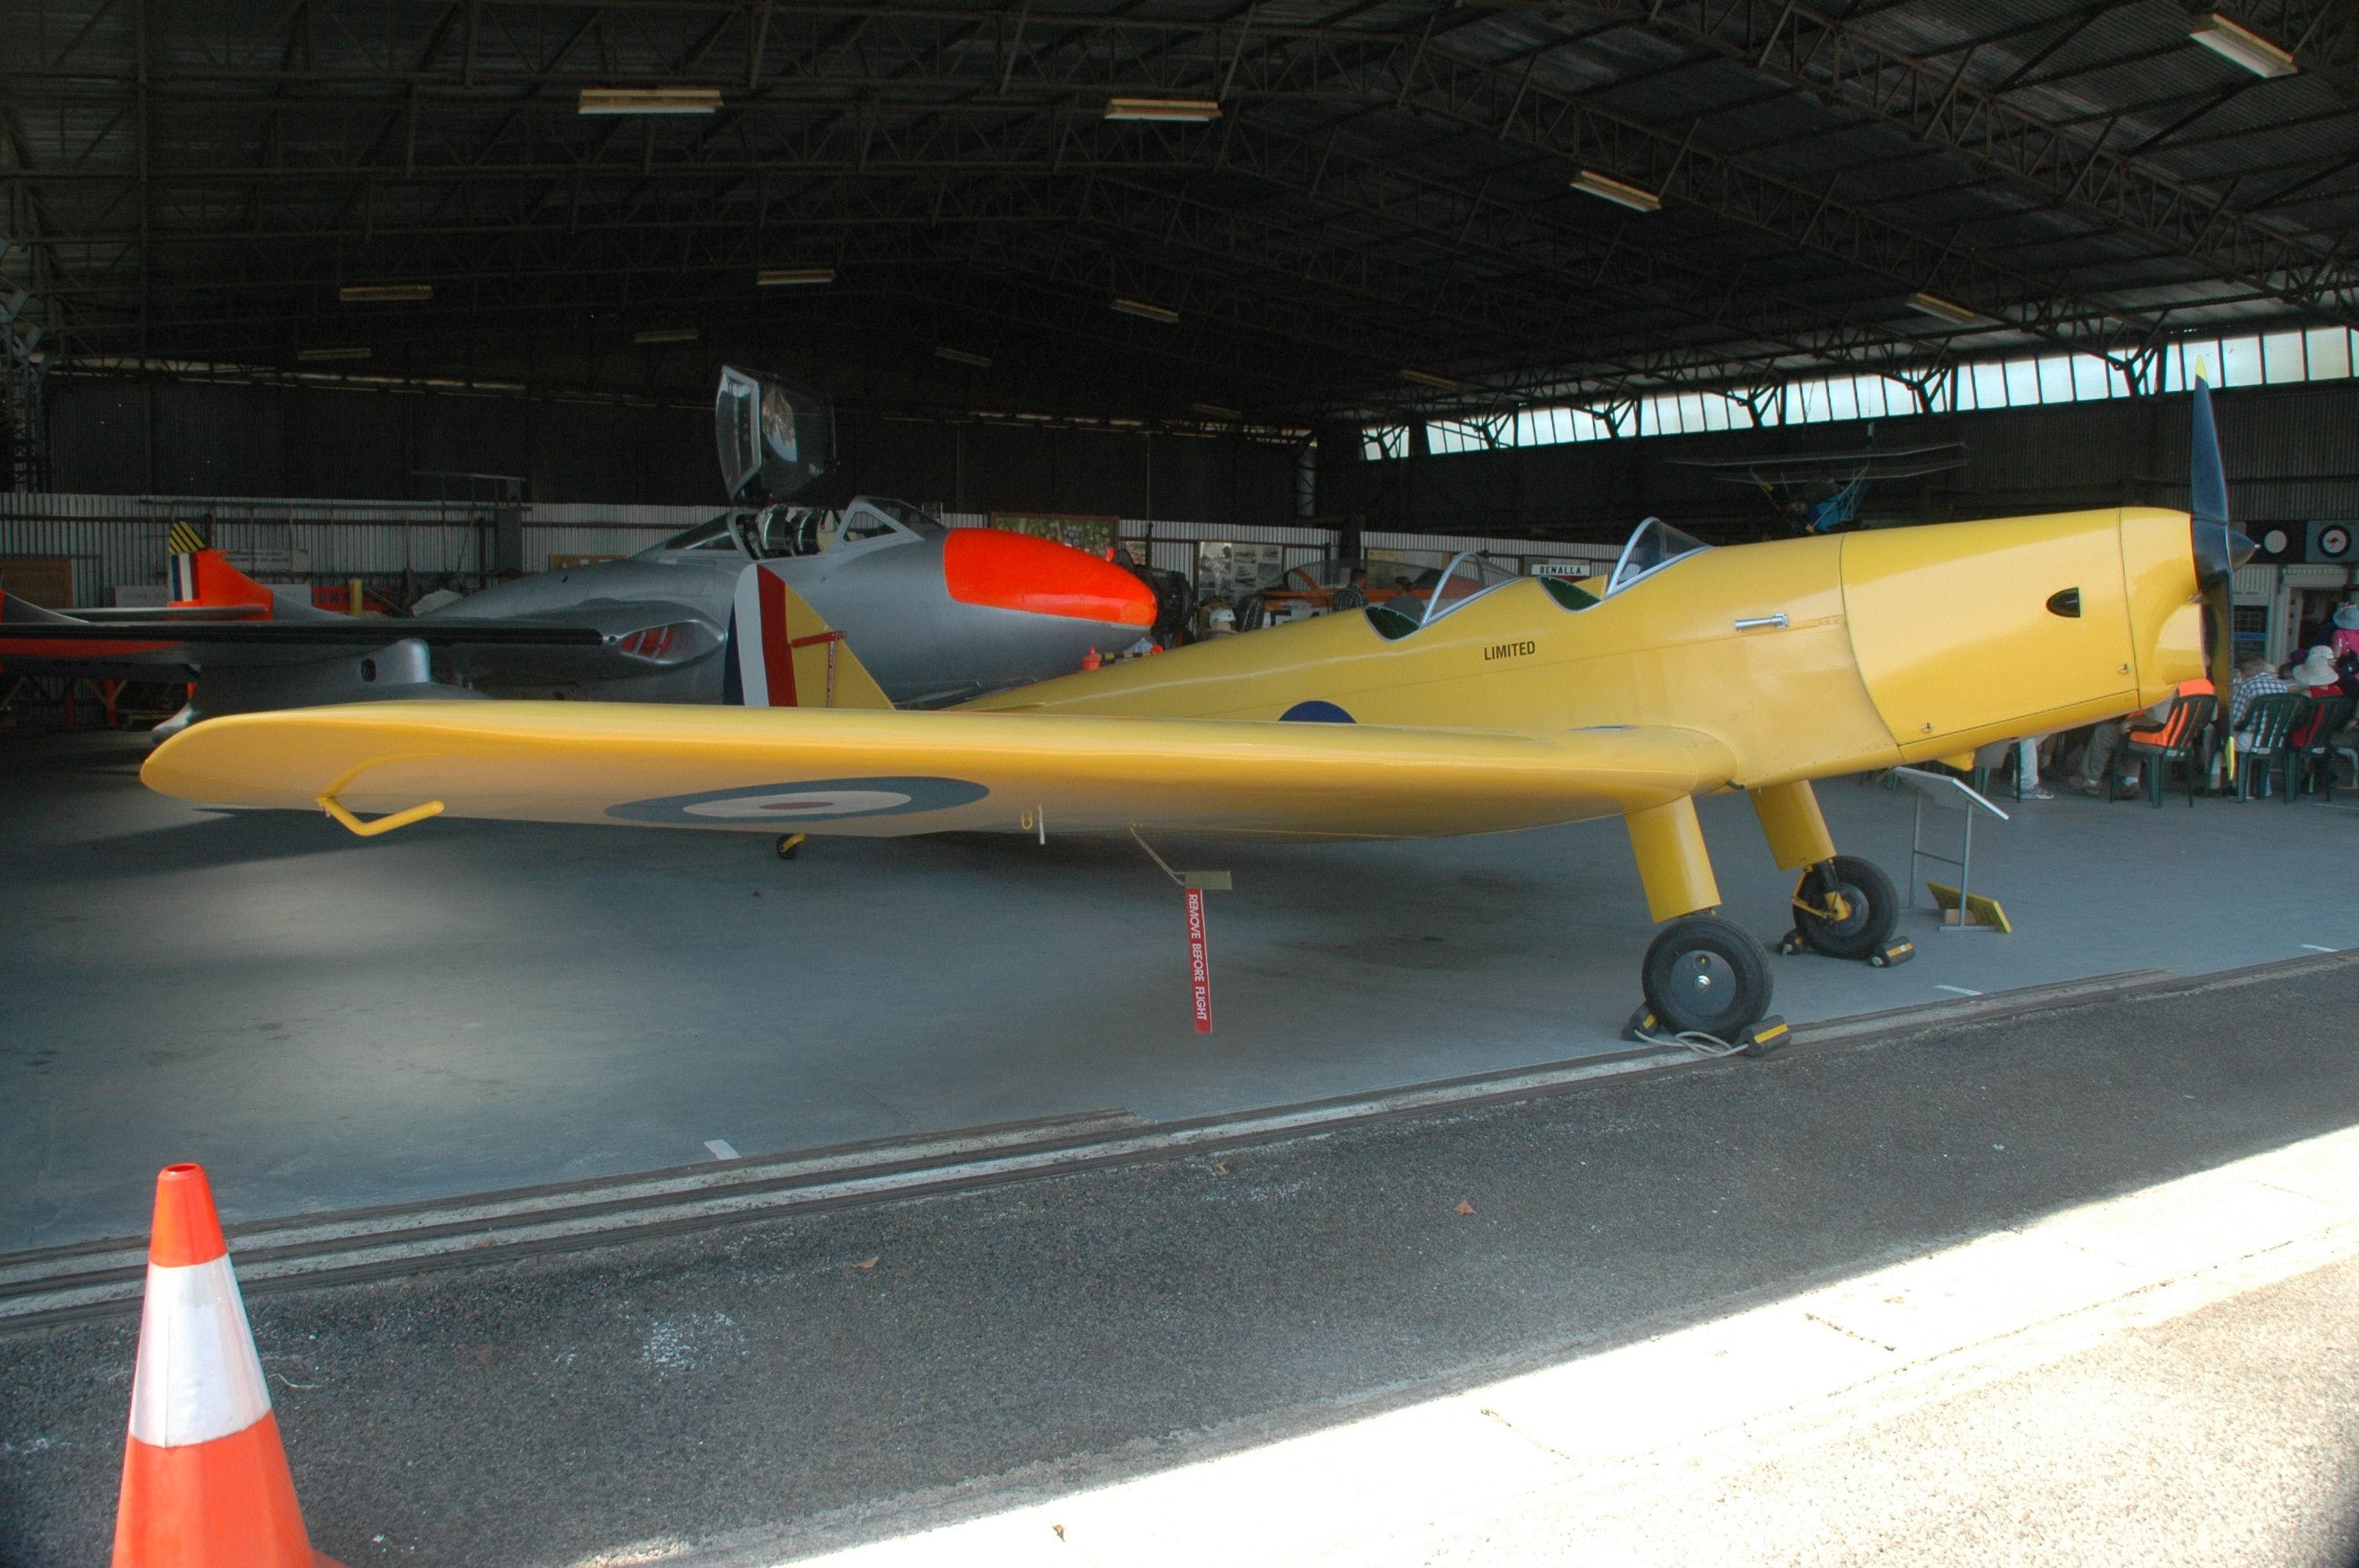 Benalla Aviation Museum - Accommodation Nelson Bay